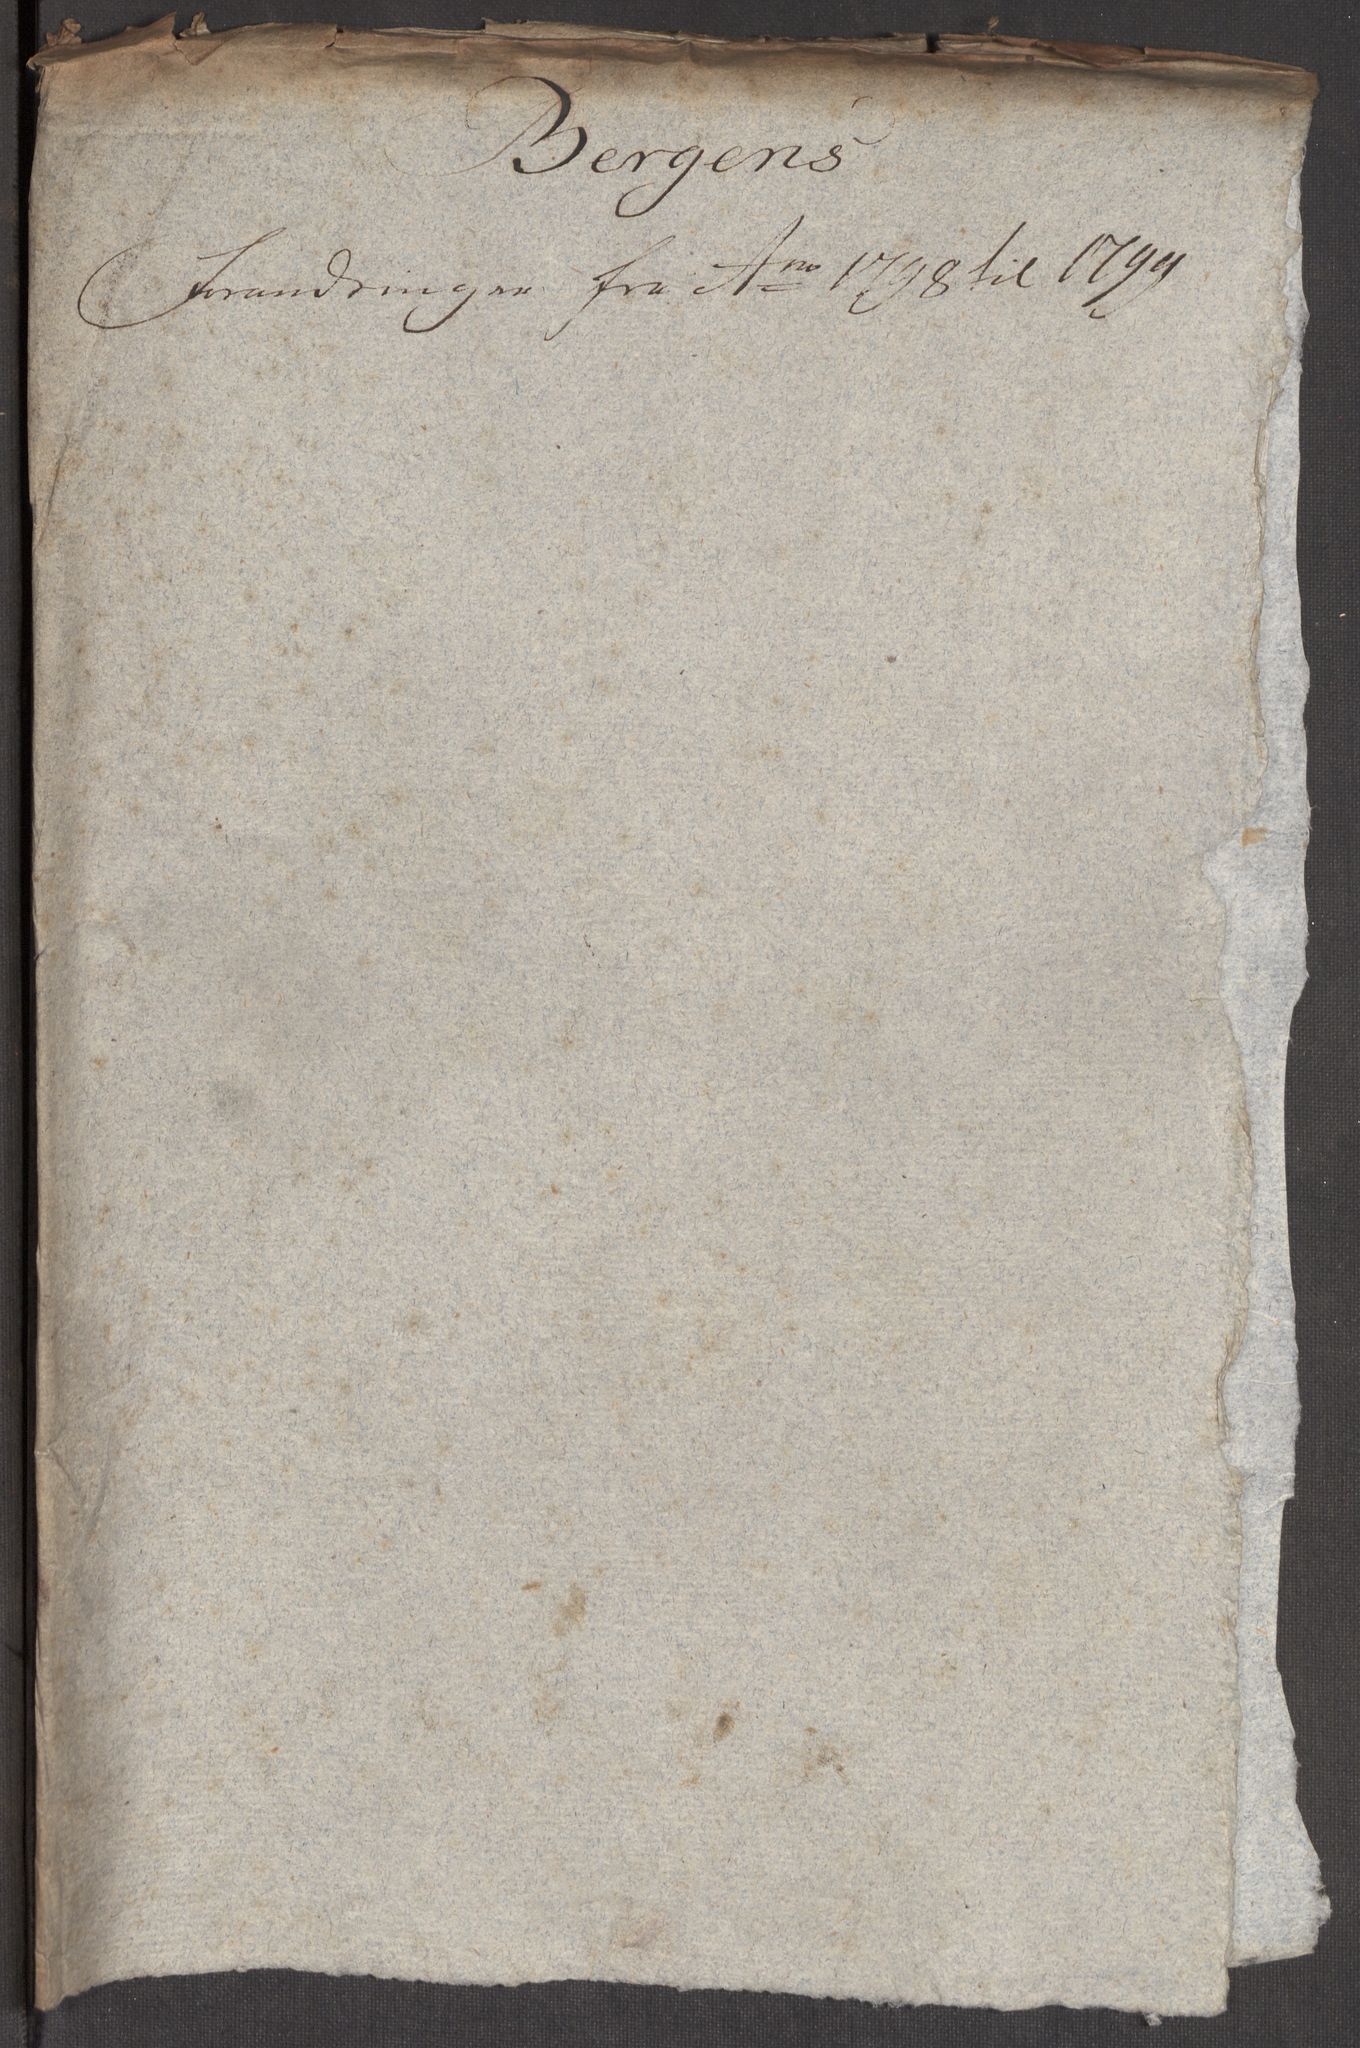 Kommersekollegiet, Brannforsikringskontoret 1767-1814, RA/EA-5458/F/Fa/L0006/0002: Bergen / Dokumenter, 1797-1807